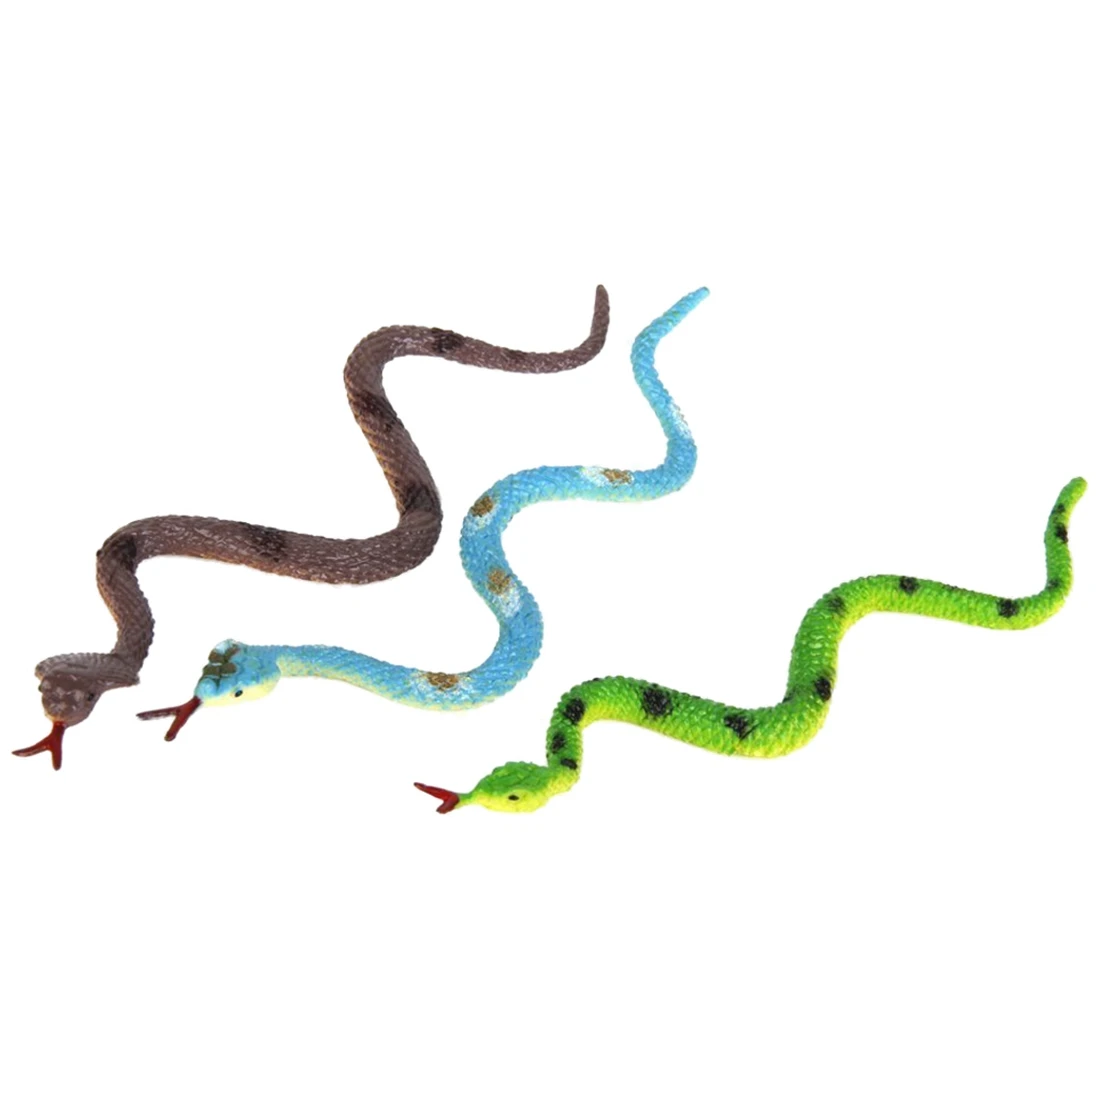 Пластиковая игрушка-модель рептилии животного змеи 12шт разноцветная - 3